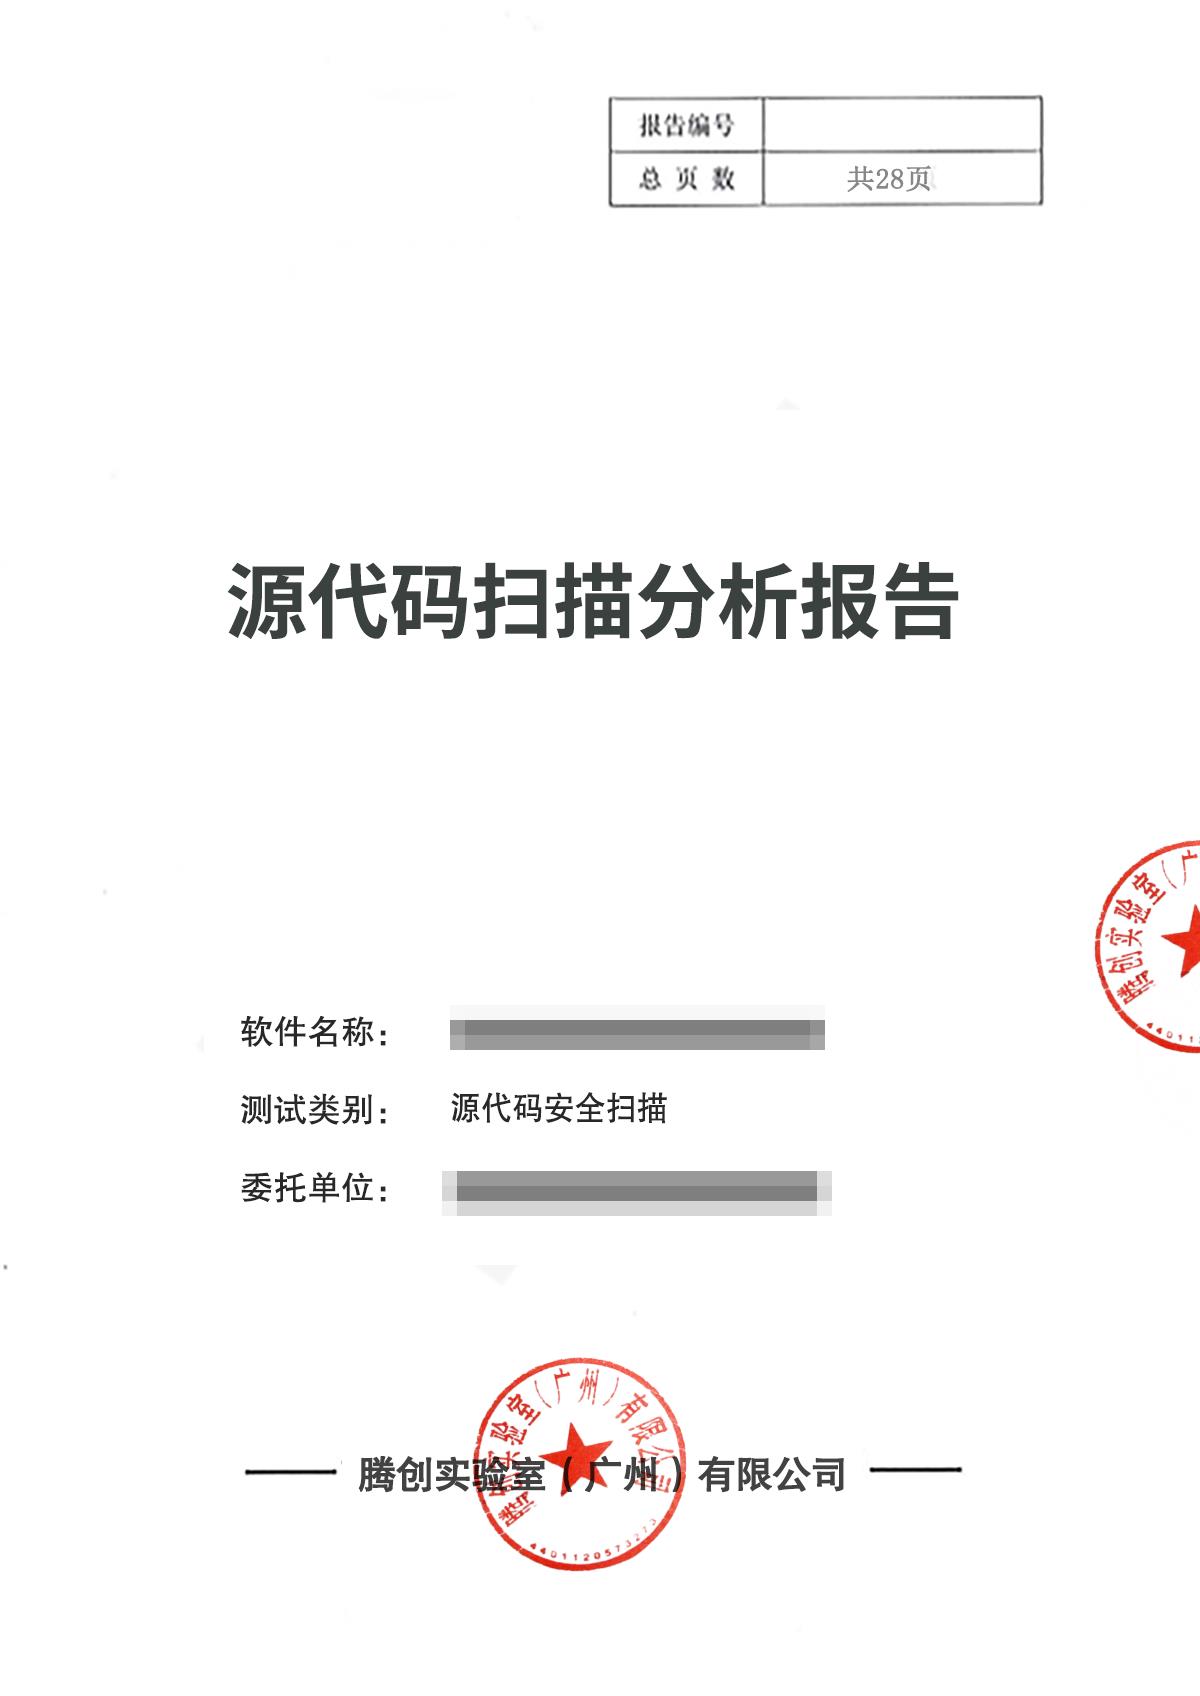 惠州软件第三方检测作用